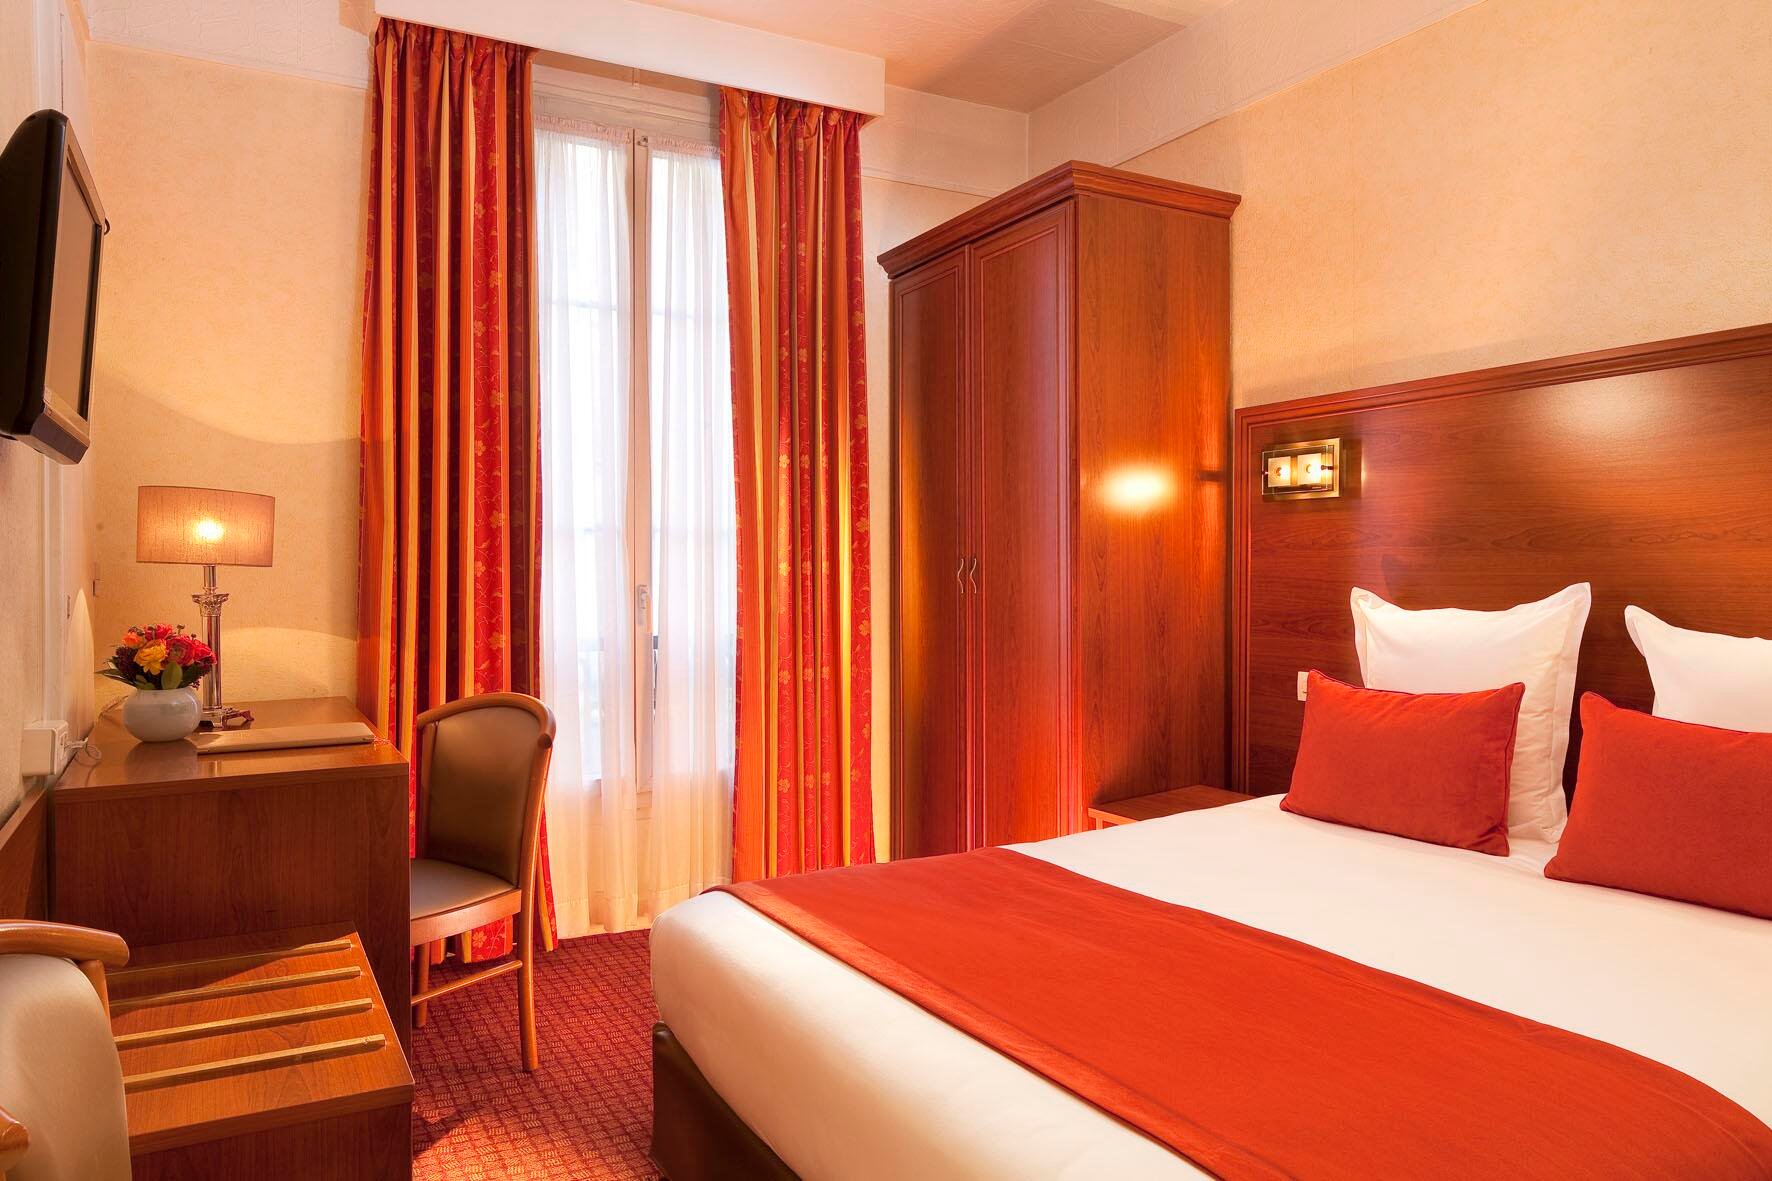 Double room Hotel Paris centre